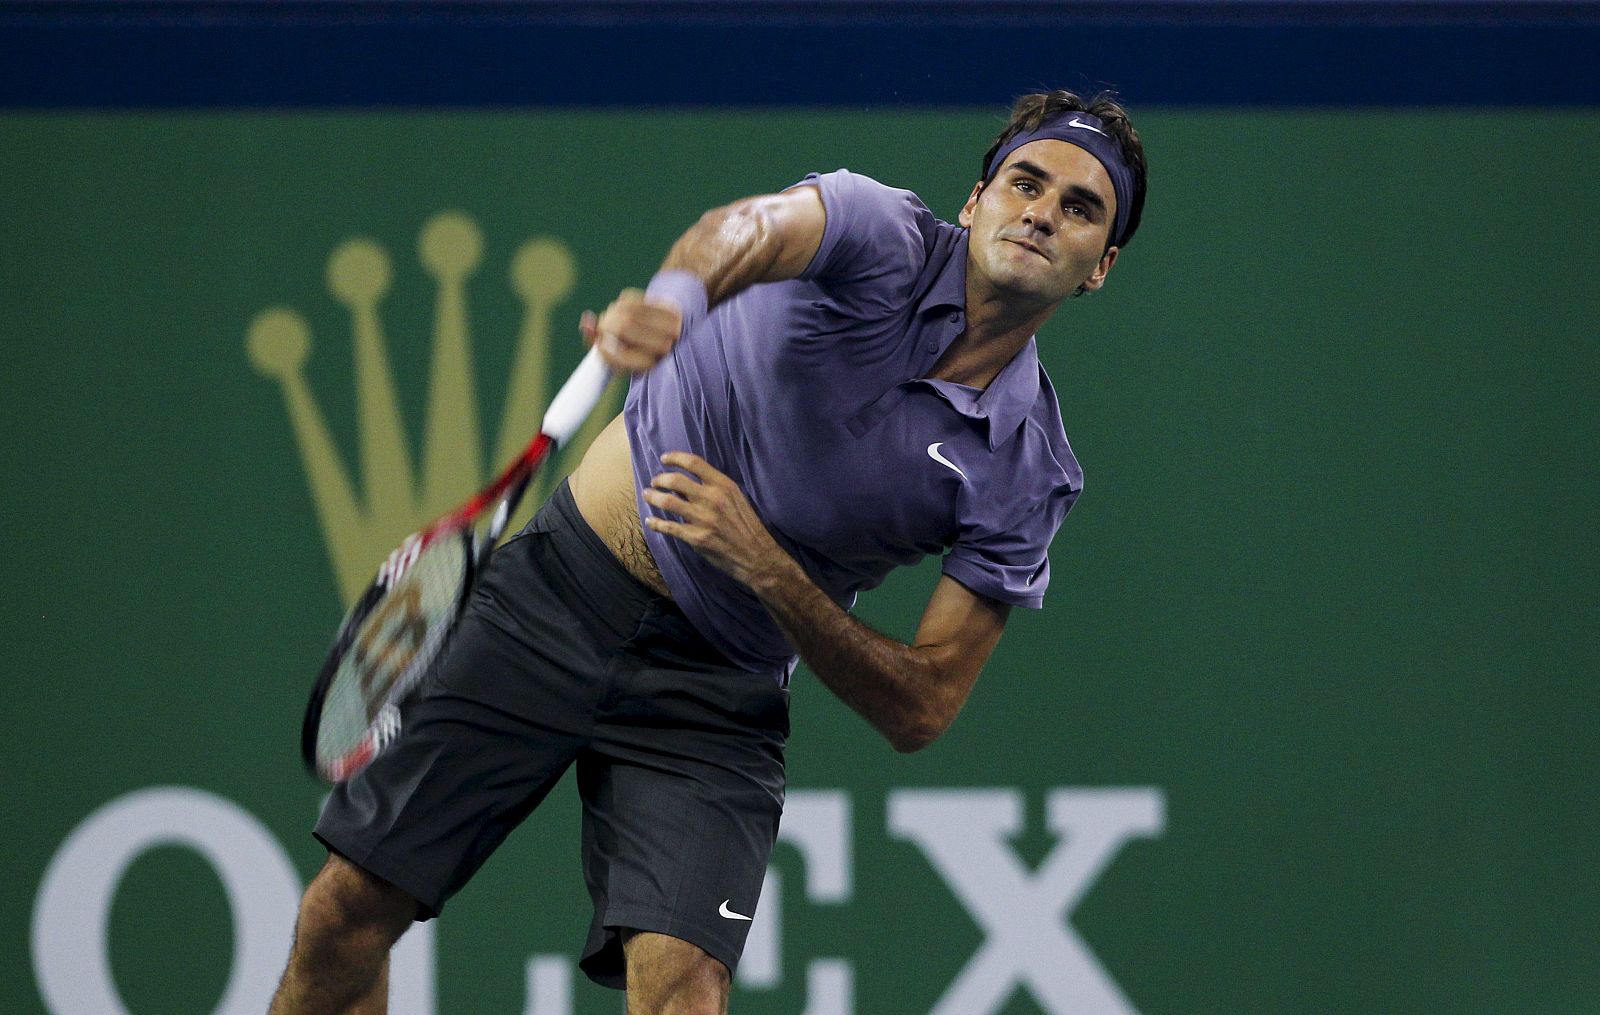 El tenista suizo Roger Federer sirve una bola.